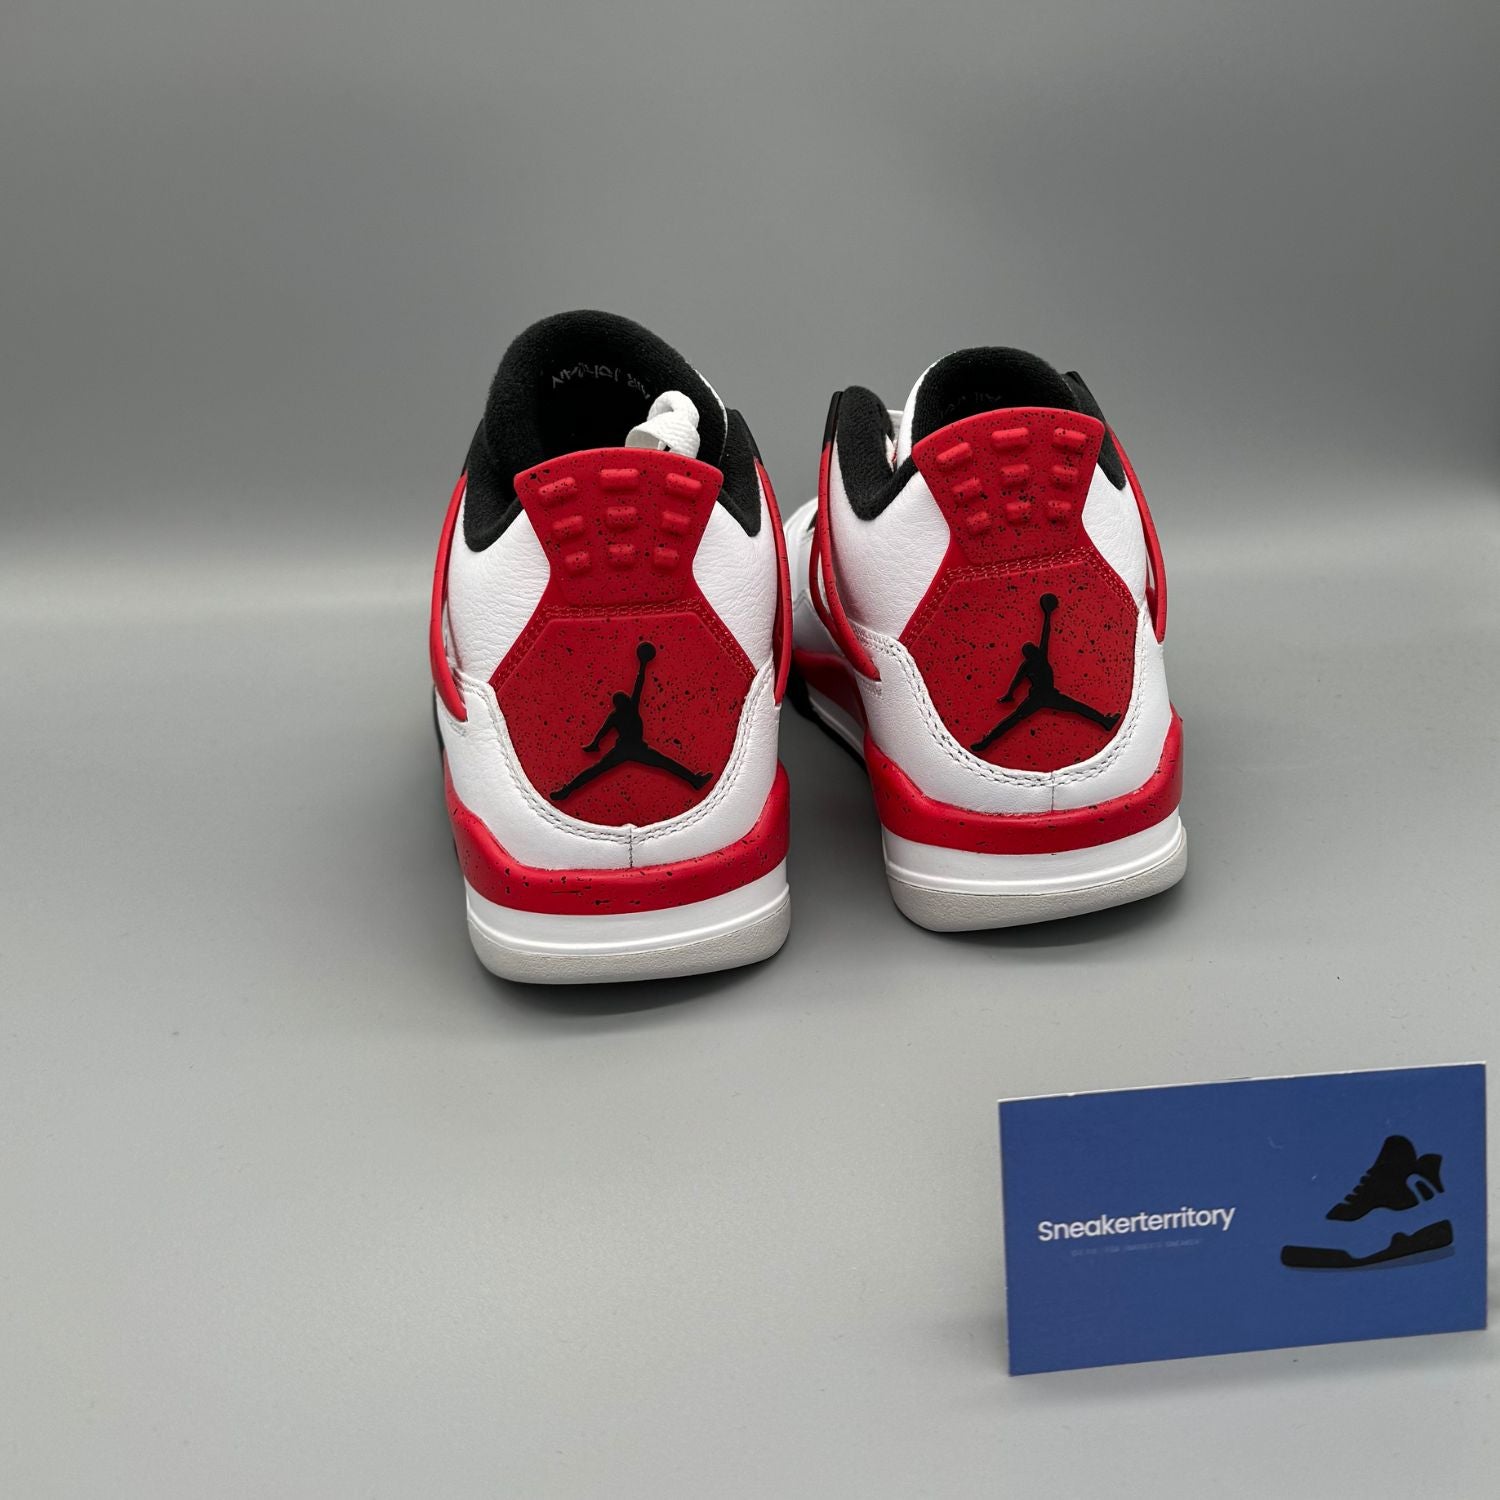 Air Jordan 4 Red Cement - Sneakerterritory; Sneaker Territory